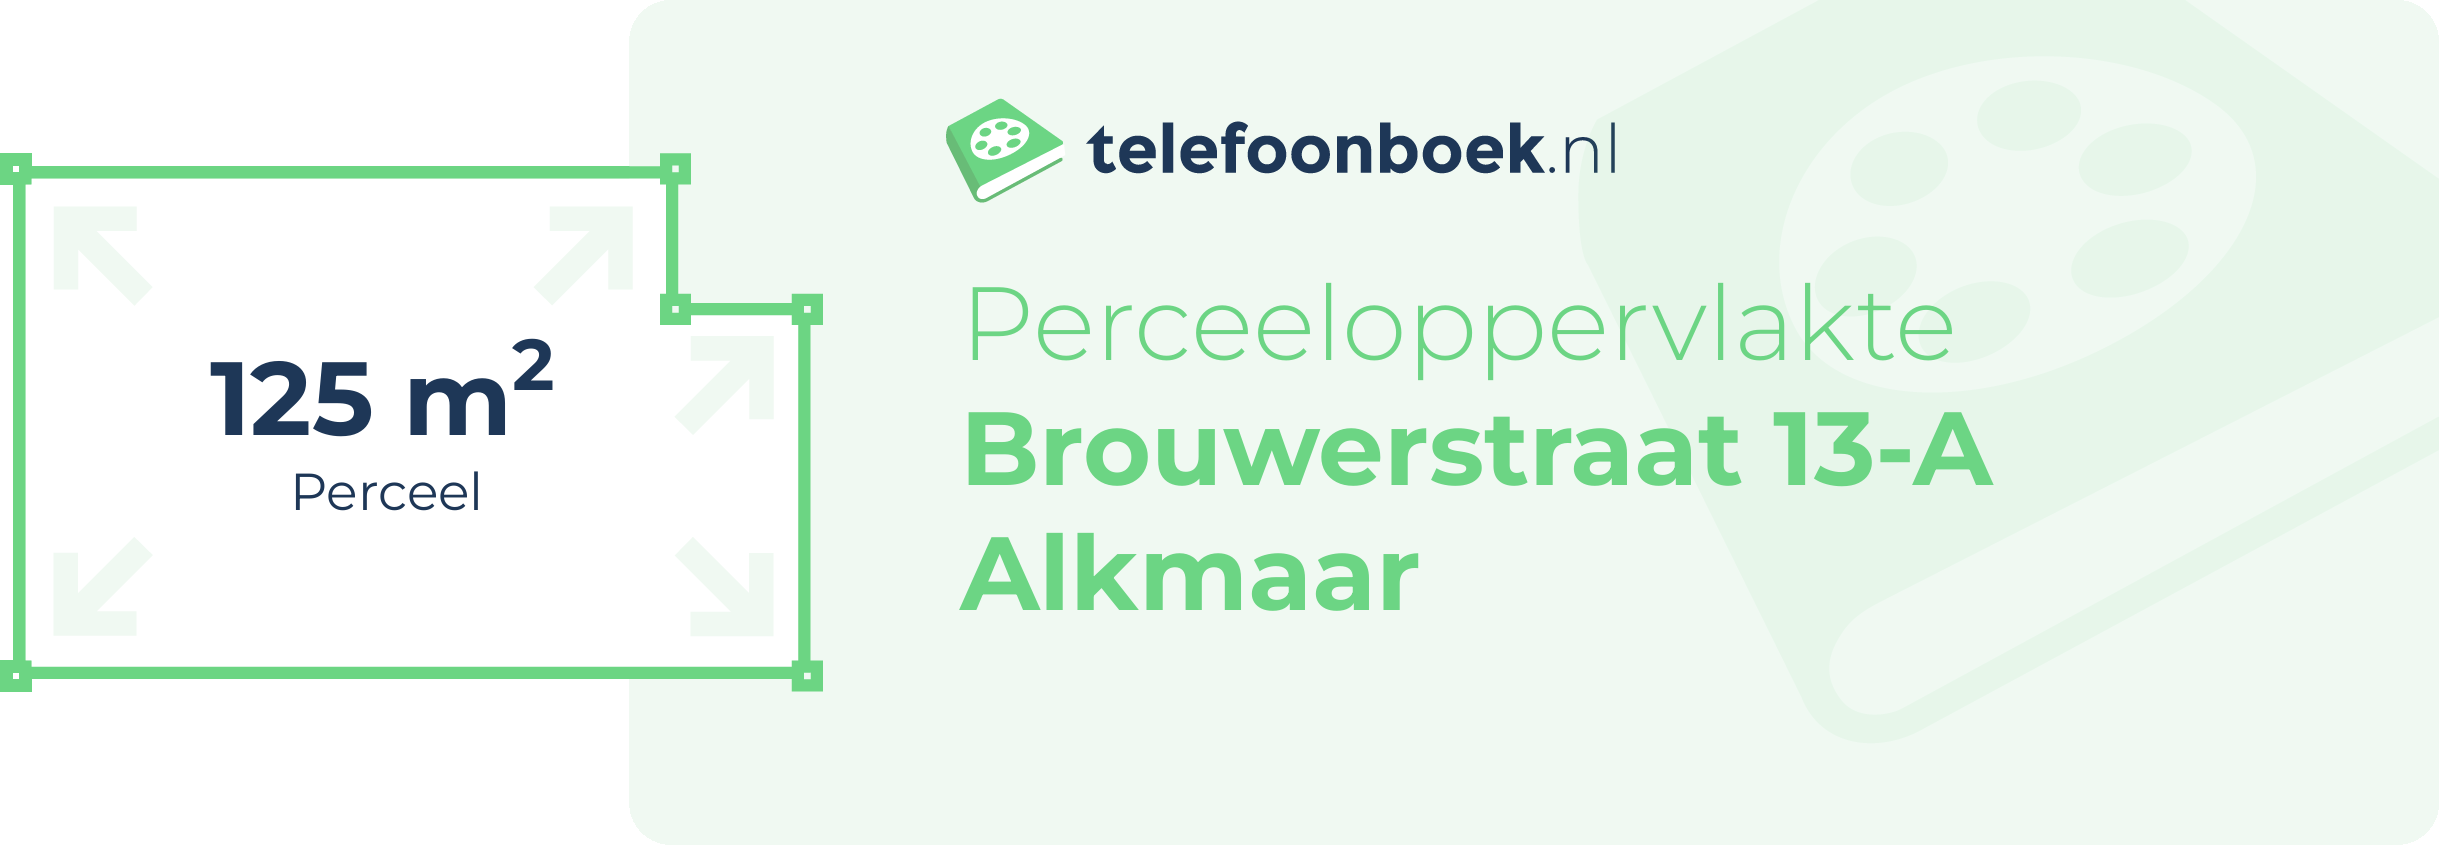 Perceeloppervlakte Brouwerstraat 13-A Alkmaar